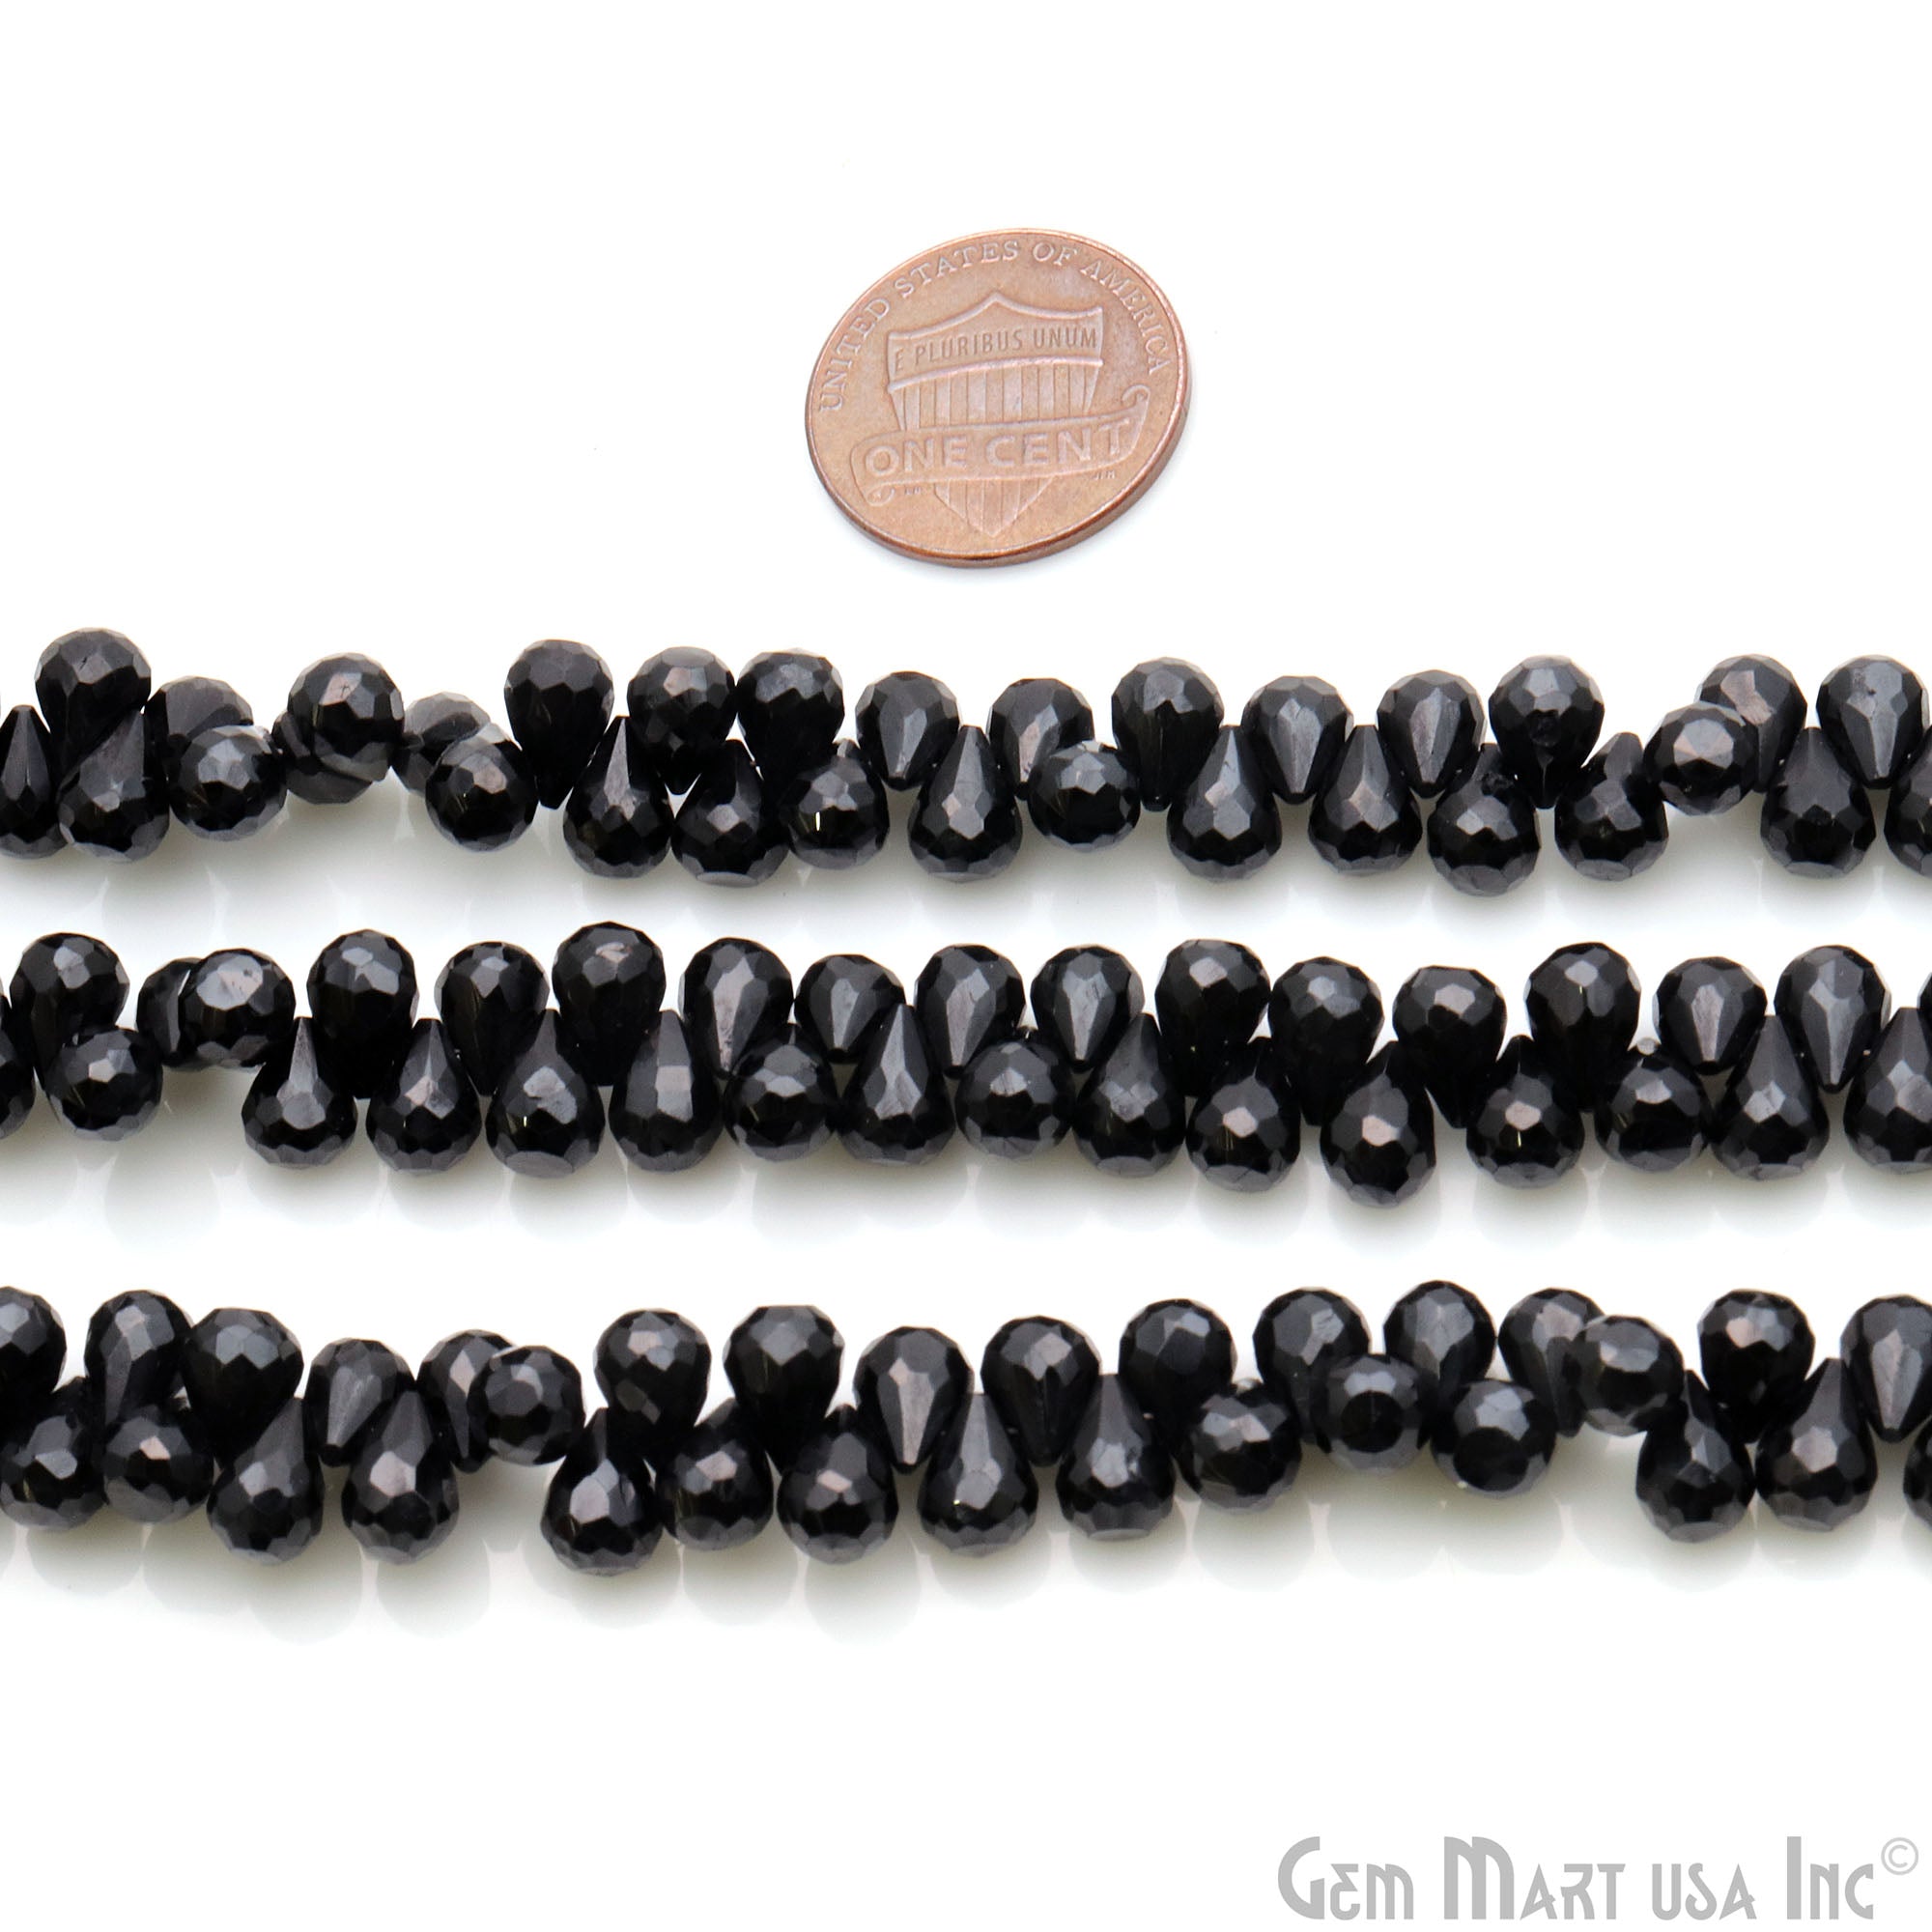 Black Spinel Faceted Gemstone Teardrops 8x6mm Rondelle Beads - GemMartUSA